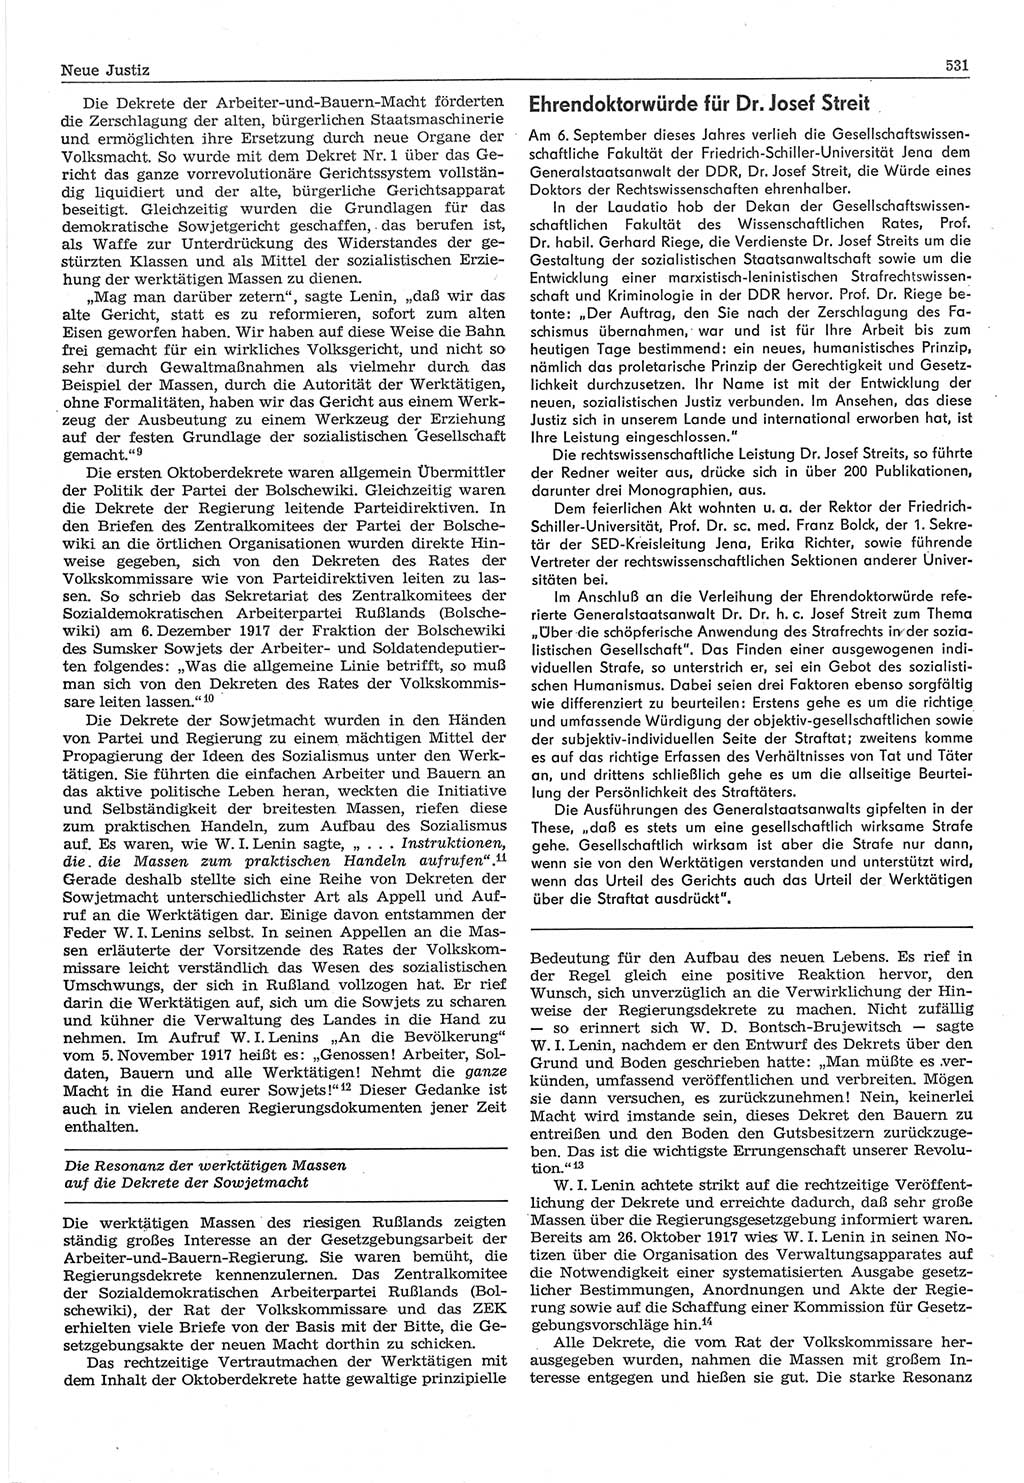 Neue Justiz (NJ), Zeitschrift für Recht und Rechtswissenschaft-Zeitschrift, sozialistisches Recht und Gesetzlichkeit, 31. Jahrgang 1977, Seite 531 (NJ DDR 1977, S. 531)